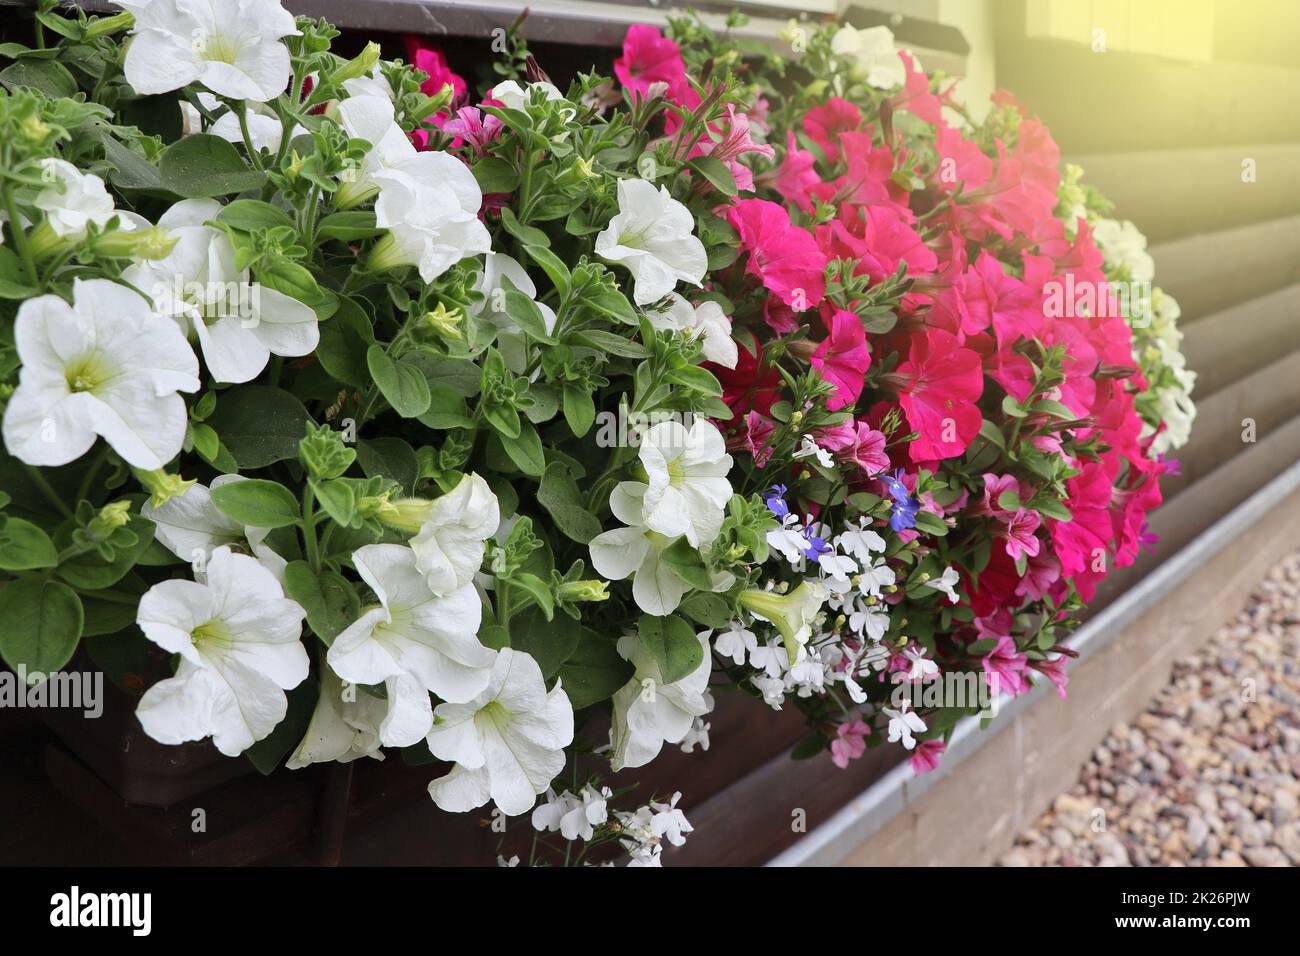 Fensterbox voller farbenfroher Petunien. Rosafarbene und weiß blühende Pflanzen in einer Blumenküste im Fensterbrett Stockfoto